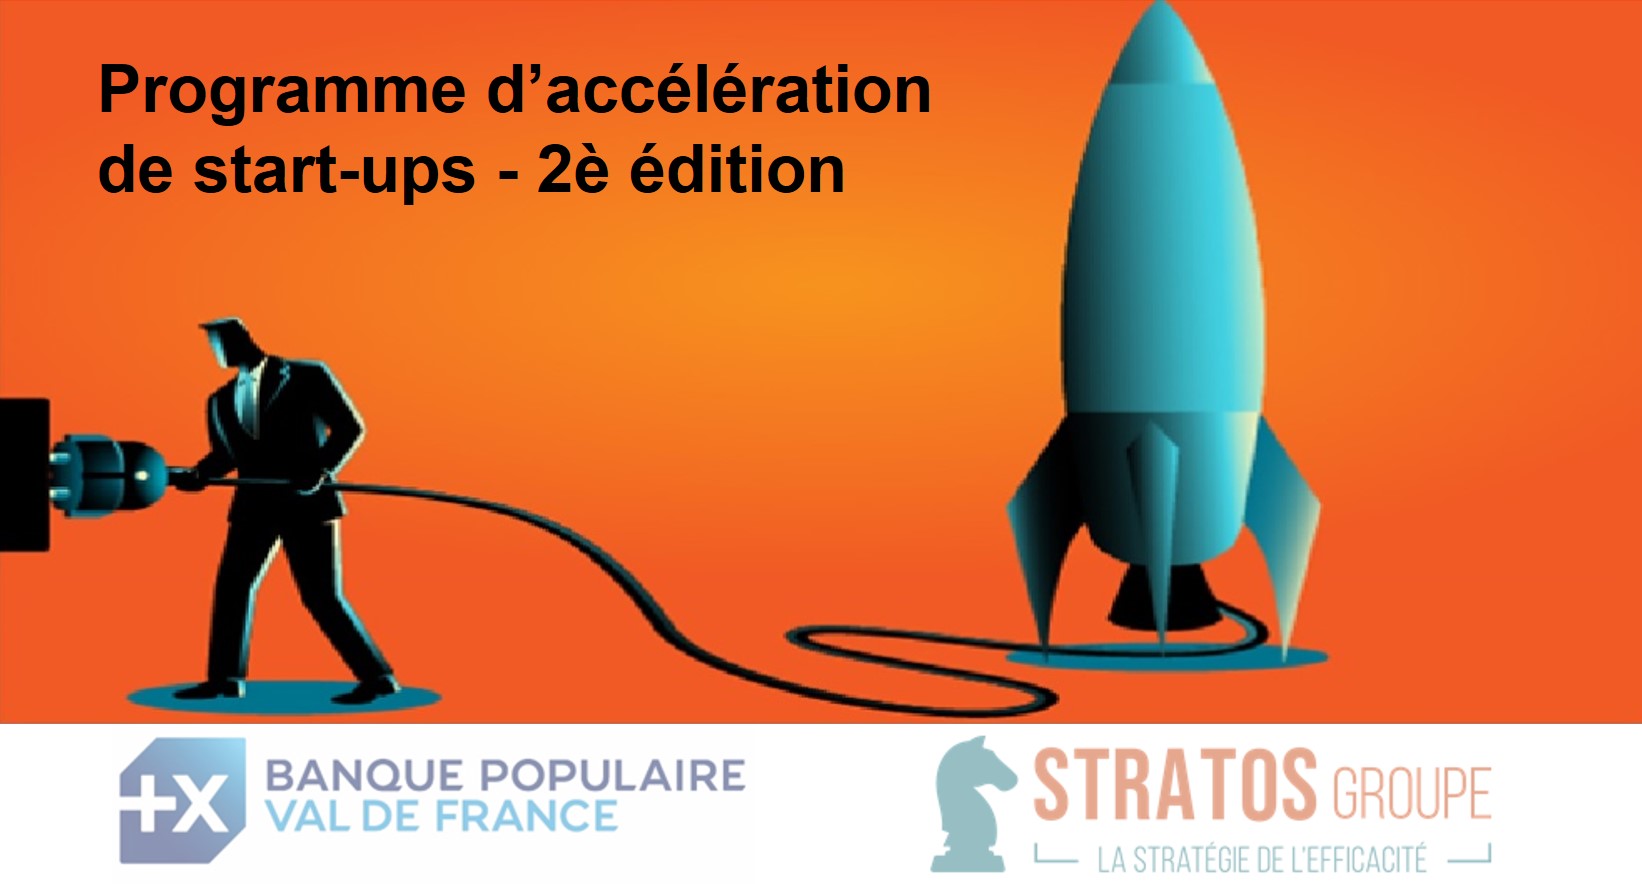 Banque Populaire Val de France et le Groupe Stratos lancent la 2e édition de leur programme d’accélération de start-ups